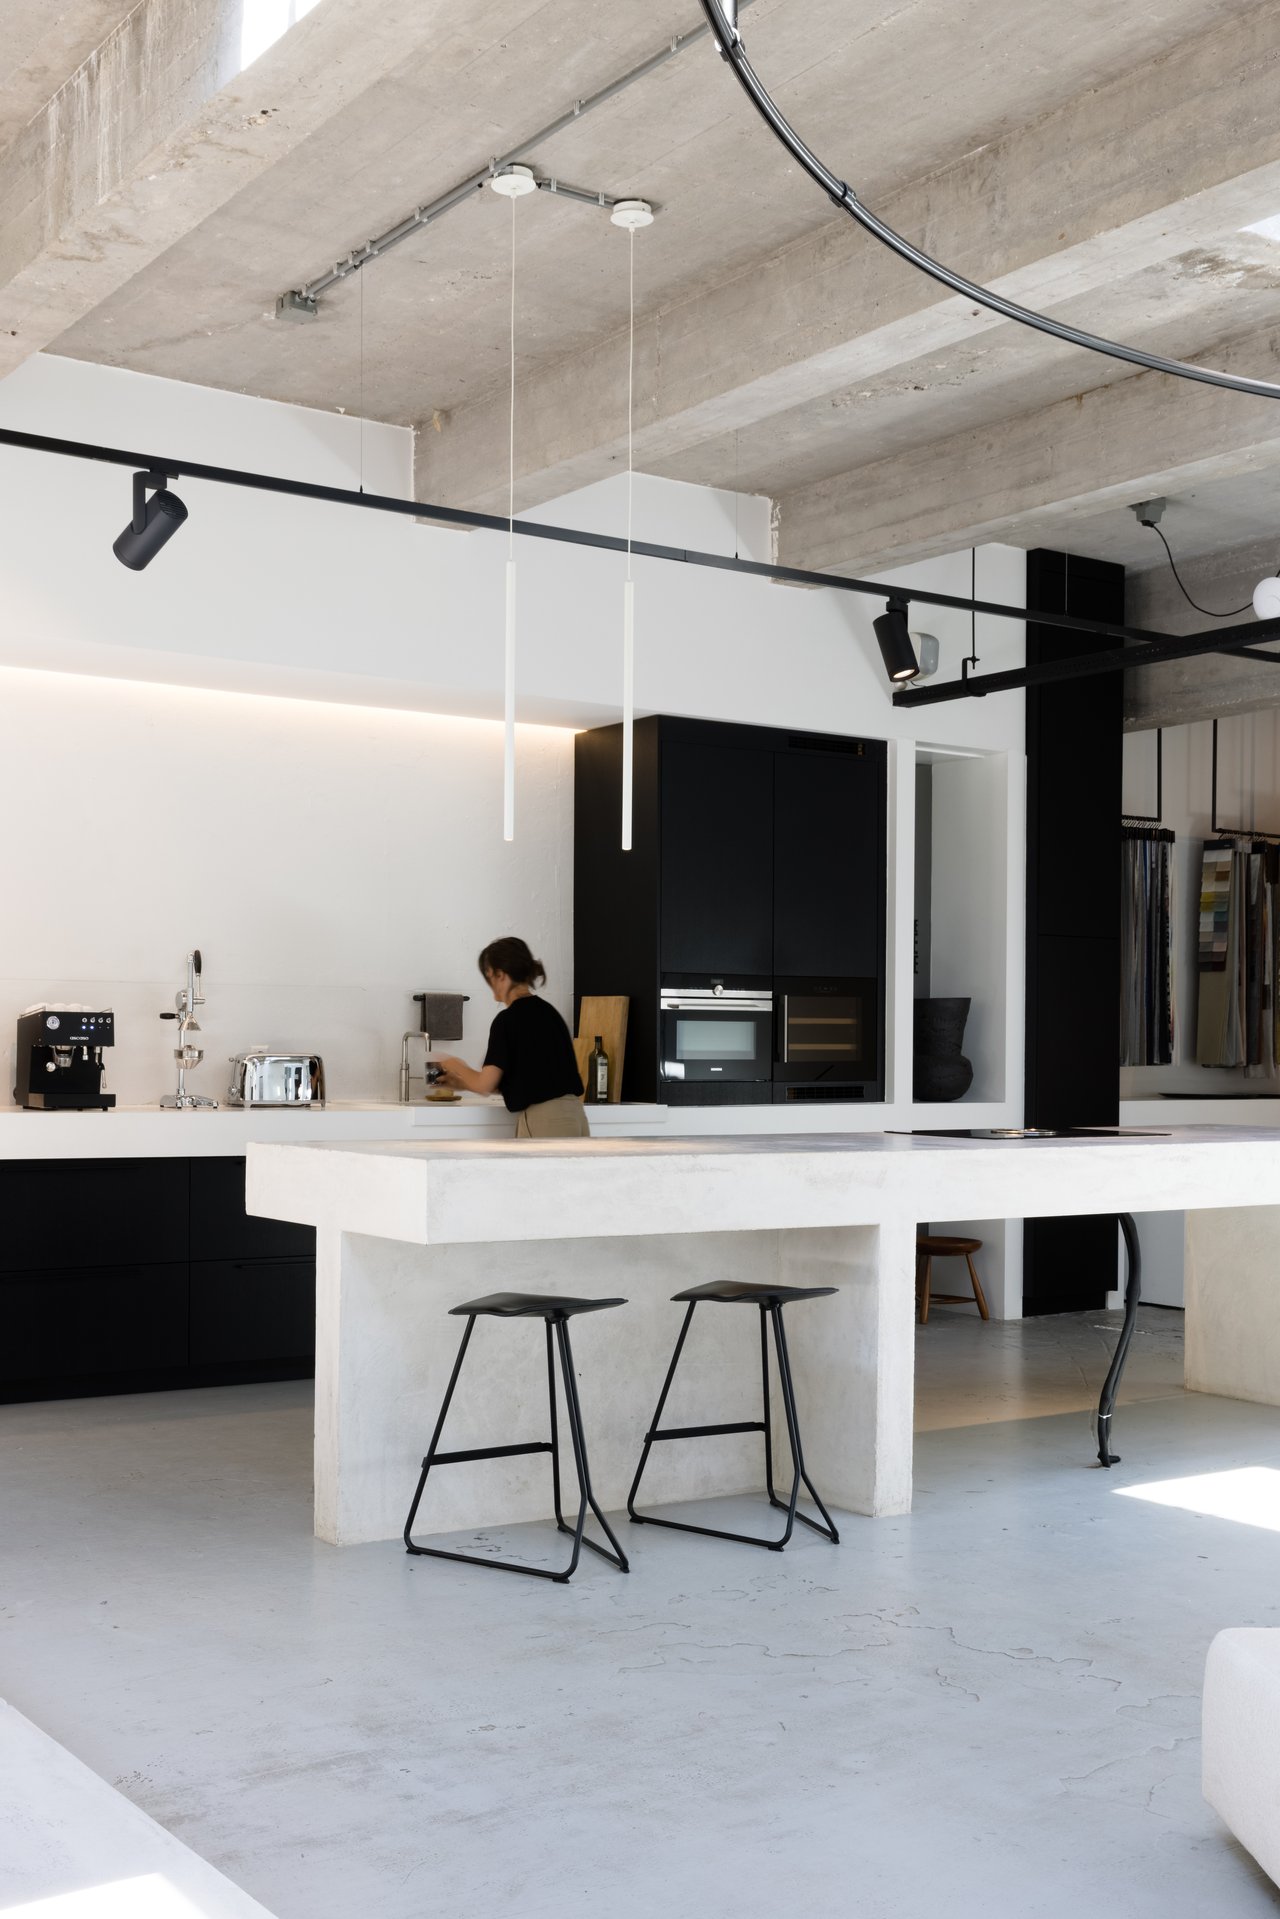 Ground floor - kitchen (zone 3)